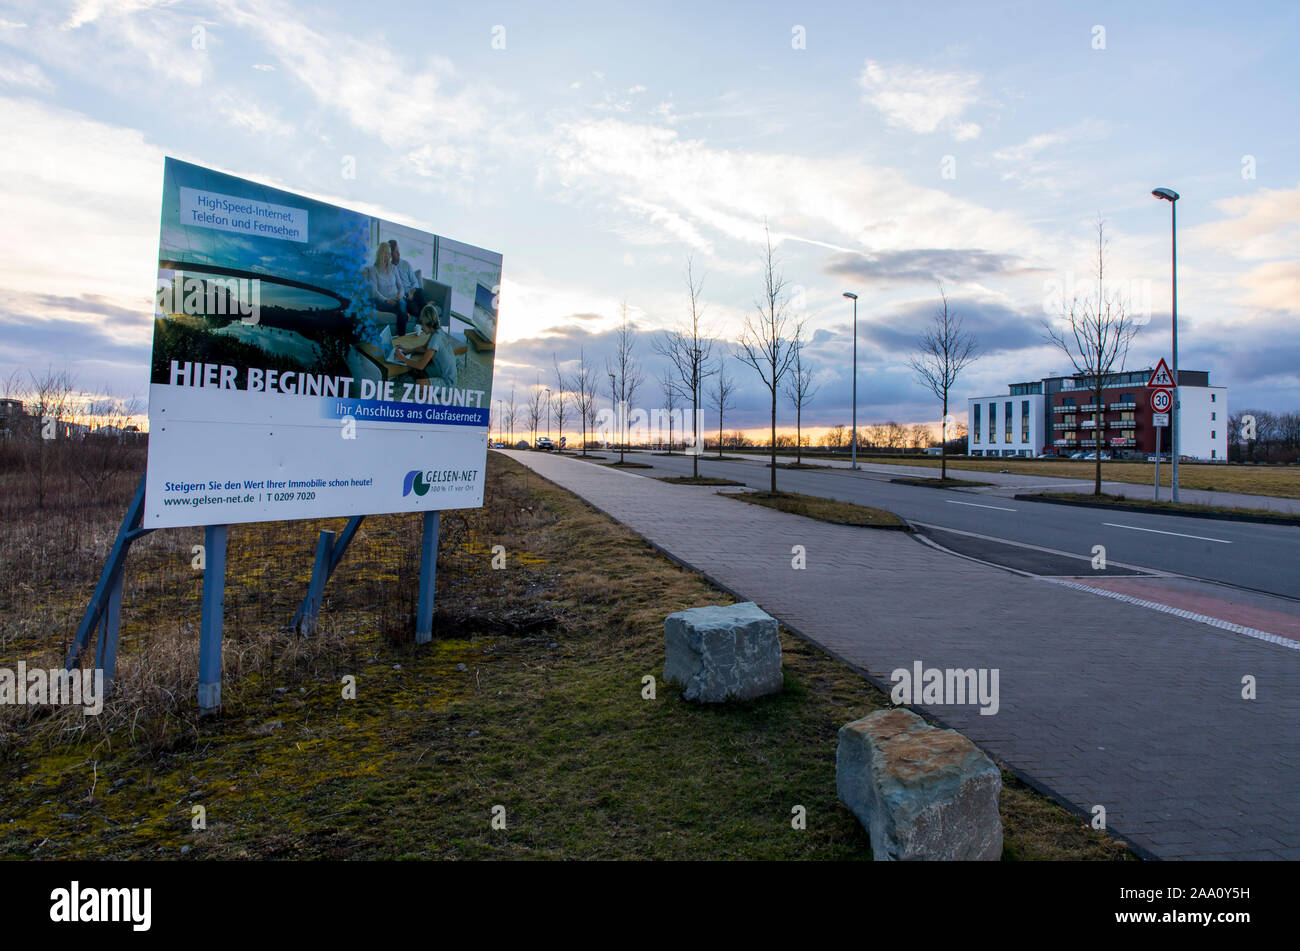 Nuova area di sviluppo in Gelsenkirchen-Bismarck, Johannes-Rau-Allee, pubblicità segno dell'energia locale provider, ELE, Emscher-Lippe-energie, per fas Foto Stock